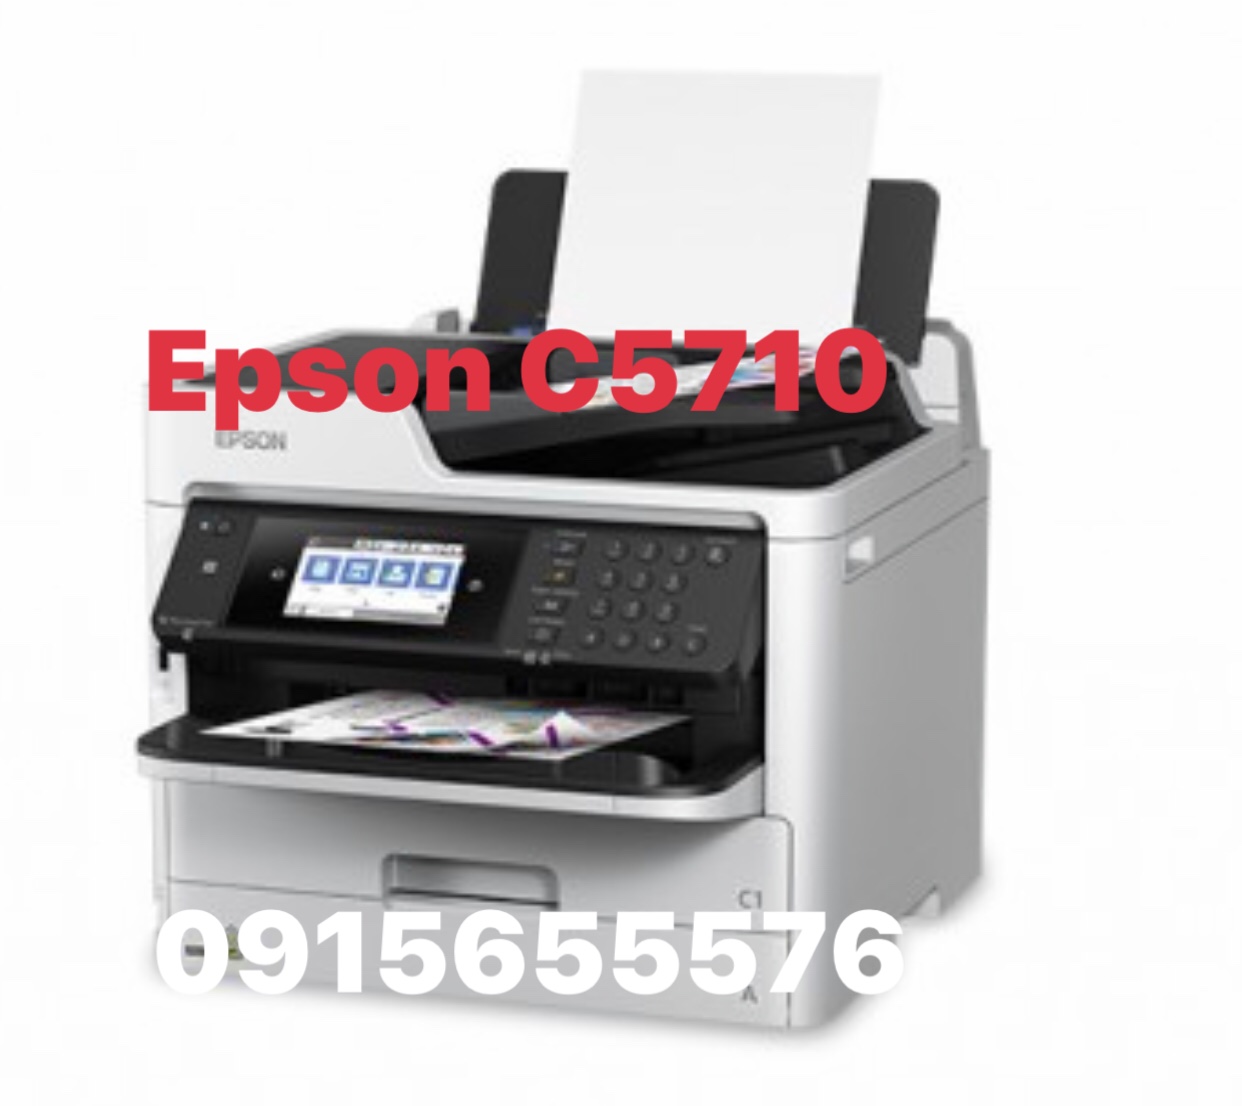 Đặc biệt năm nay, Epson C5290 đã cho ra mắt phiên bản nâng cấp với tốc độ in nhanh hơn và chất lượng in ấn tốt hơn. Máy in này sẽ giúp bạn tiết kiệm thời gian và chi phí khi sản xuất thiệp cưới. Bạn sẽ không còn lo lắng về việc in ấn sẽ bị vỡ hình, bể mực hay không đủ số lượng nhờ vào Epson C5290 mạnh mẽ.